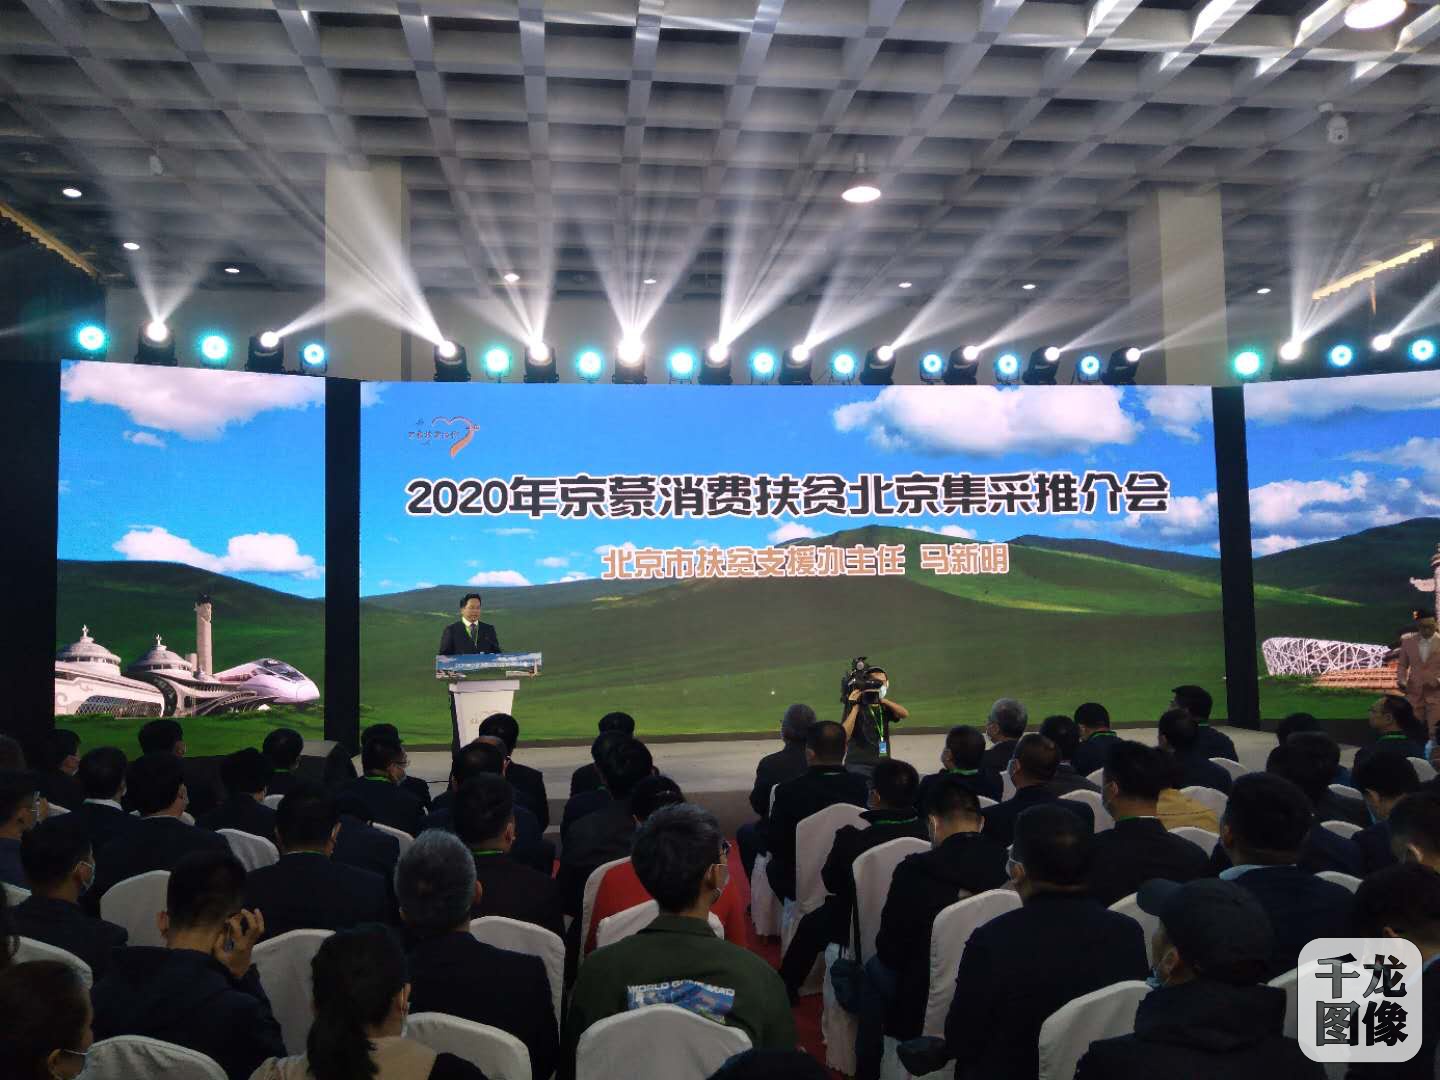 2020京蒙消费扶贫北京集采推介会签订采购协议76.2亿元